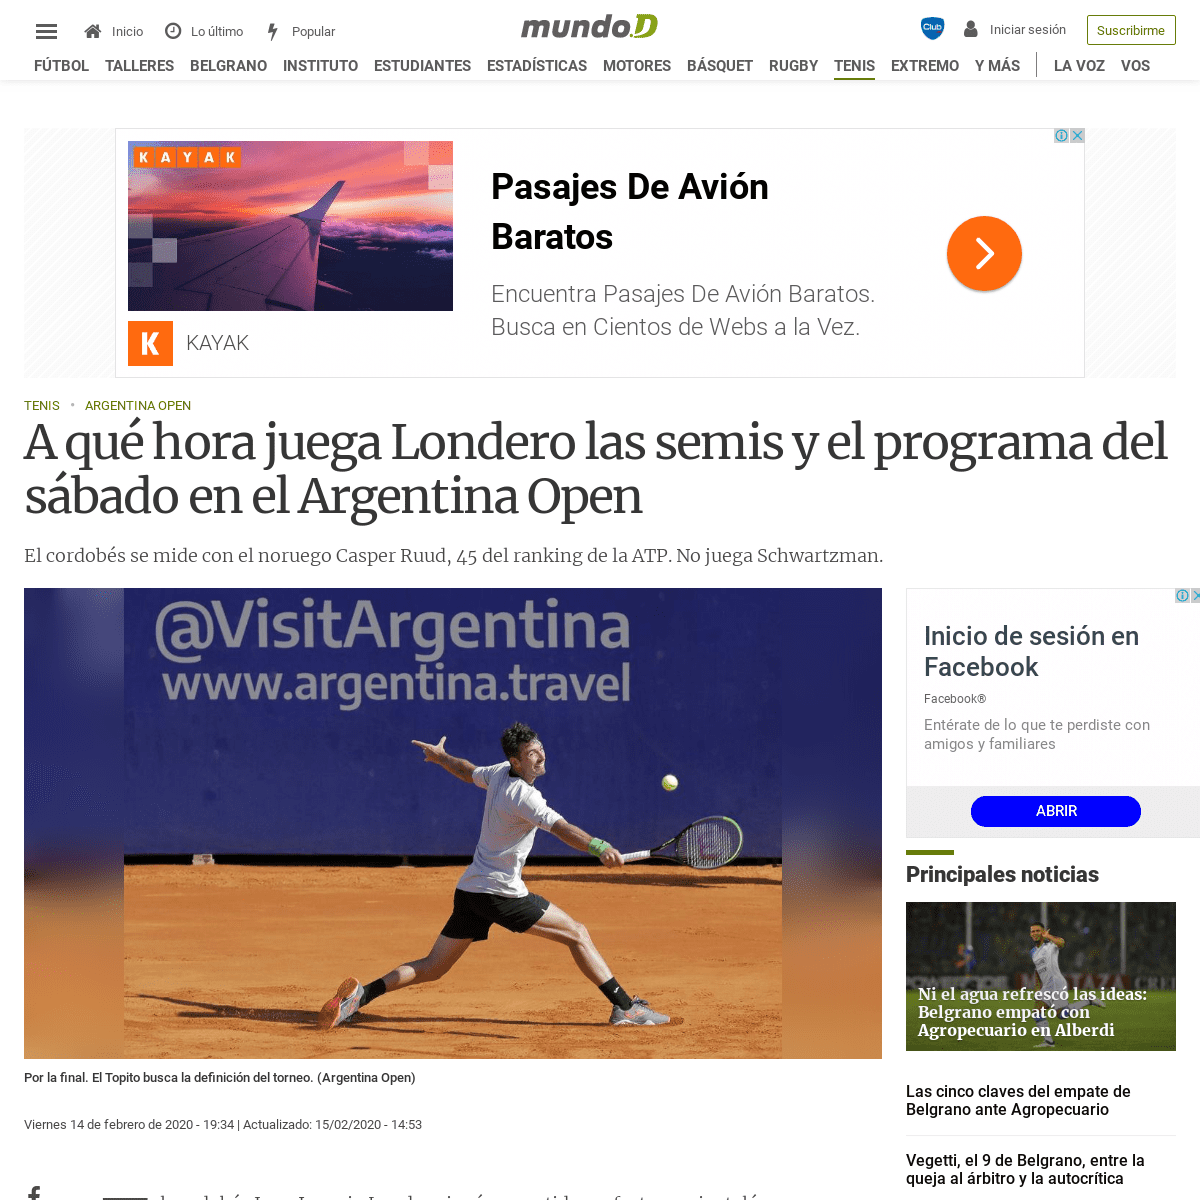 A complete backup of mundod.lavoz.com.ar/tenis/a-que-hora-juega-londero-las-semis-y-el-programa-del-sabado-en-el-argentina-open